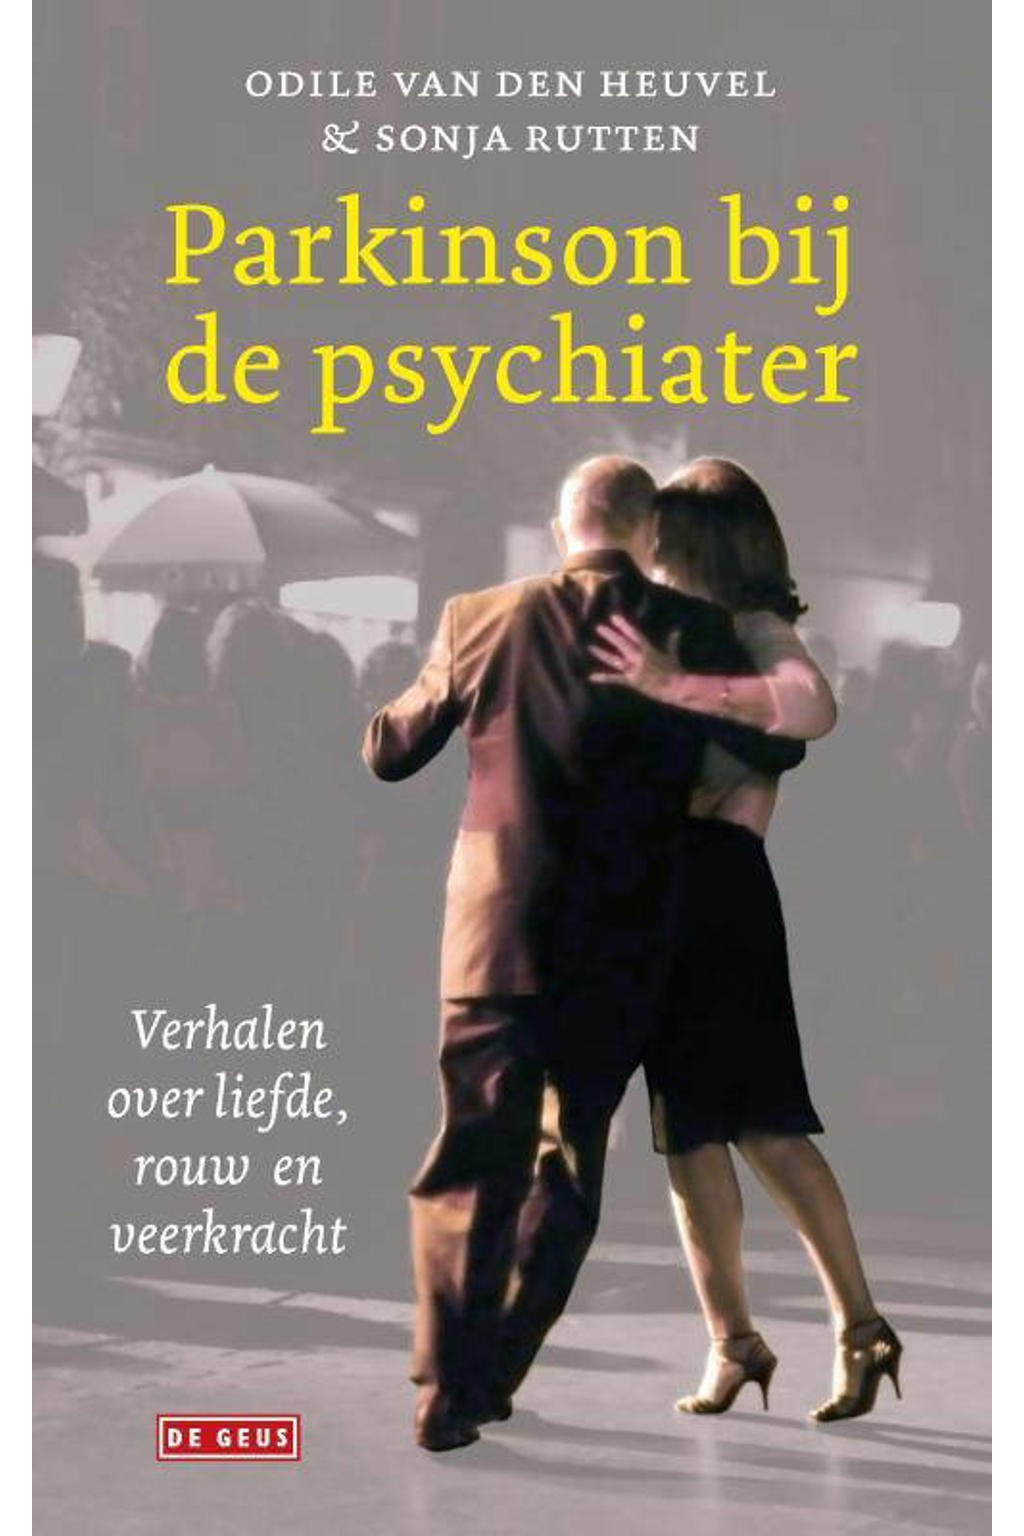 Parkinson bij de psychiater - Odile van den Heuvel en Sonja Rutten